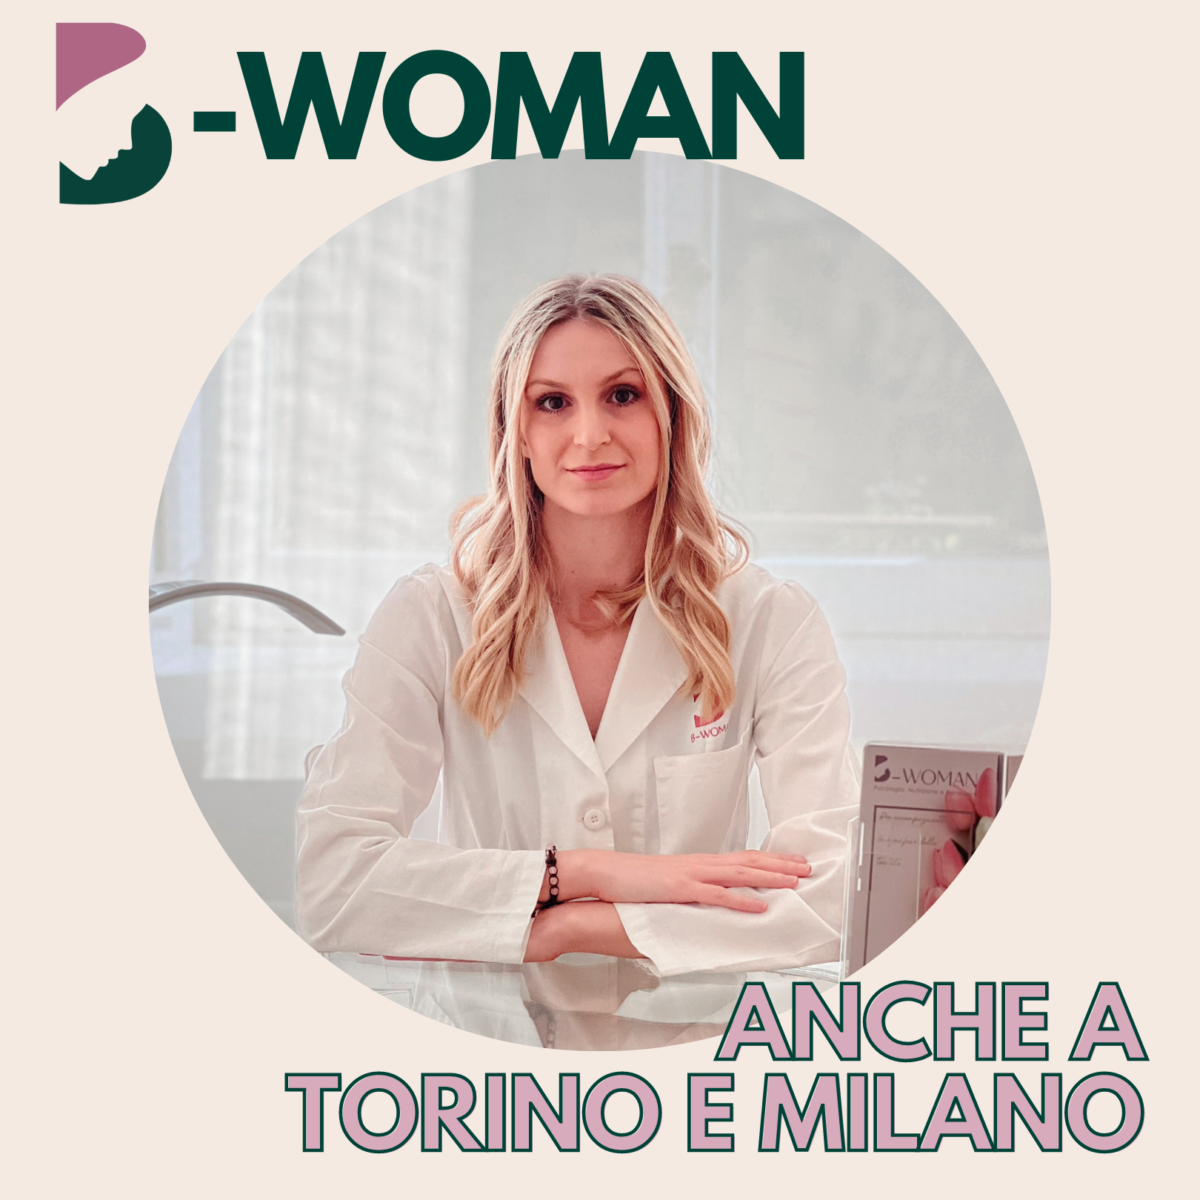 Il-Servizio-di-Nutrizione-B-Woman-anche-a-Torino-e-Milano-con-la-Dr.ssa-Mariachiara-Allori-1200x1200.png